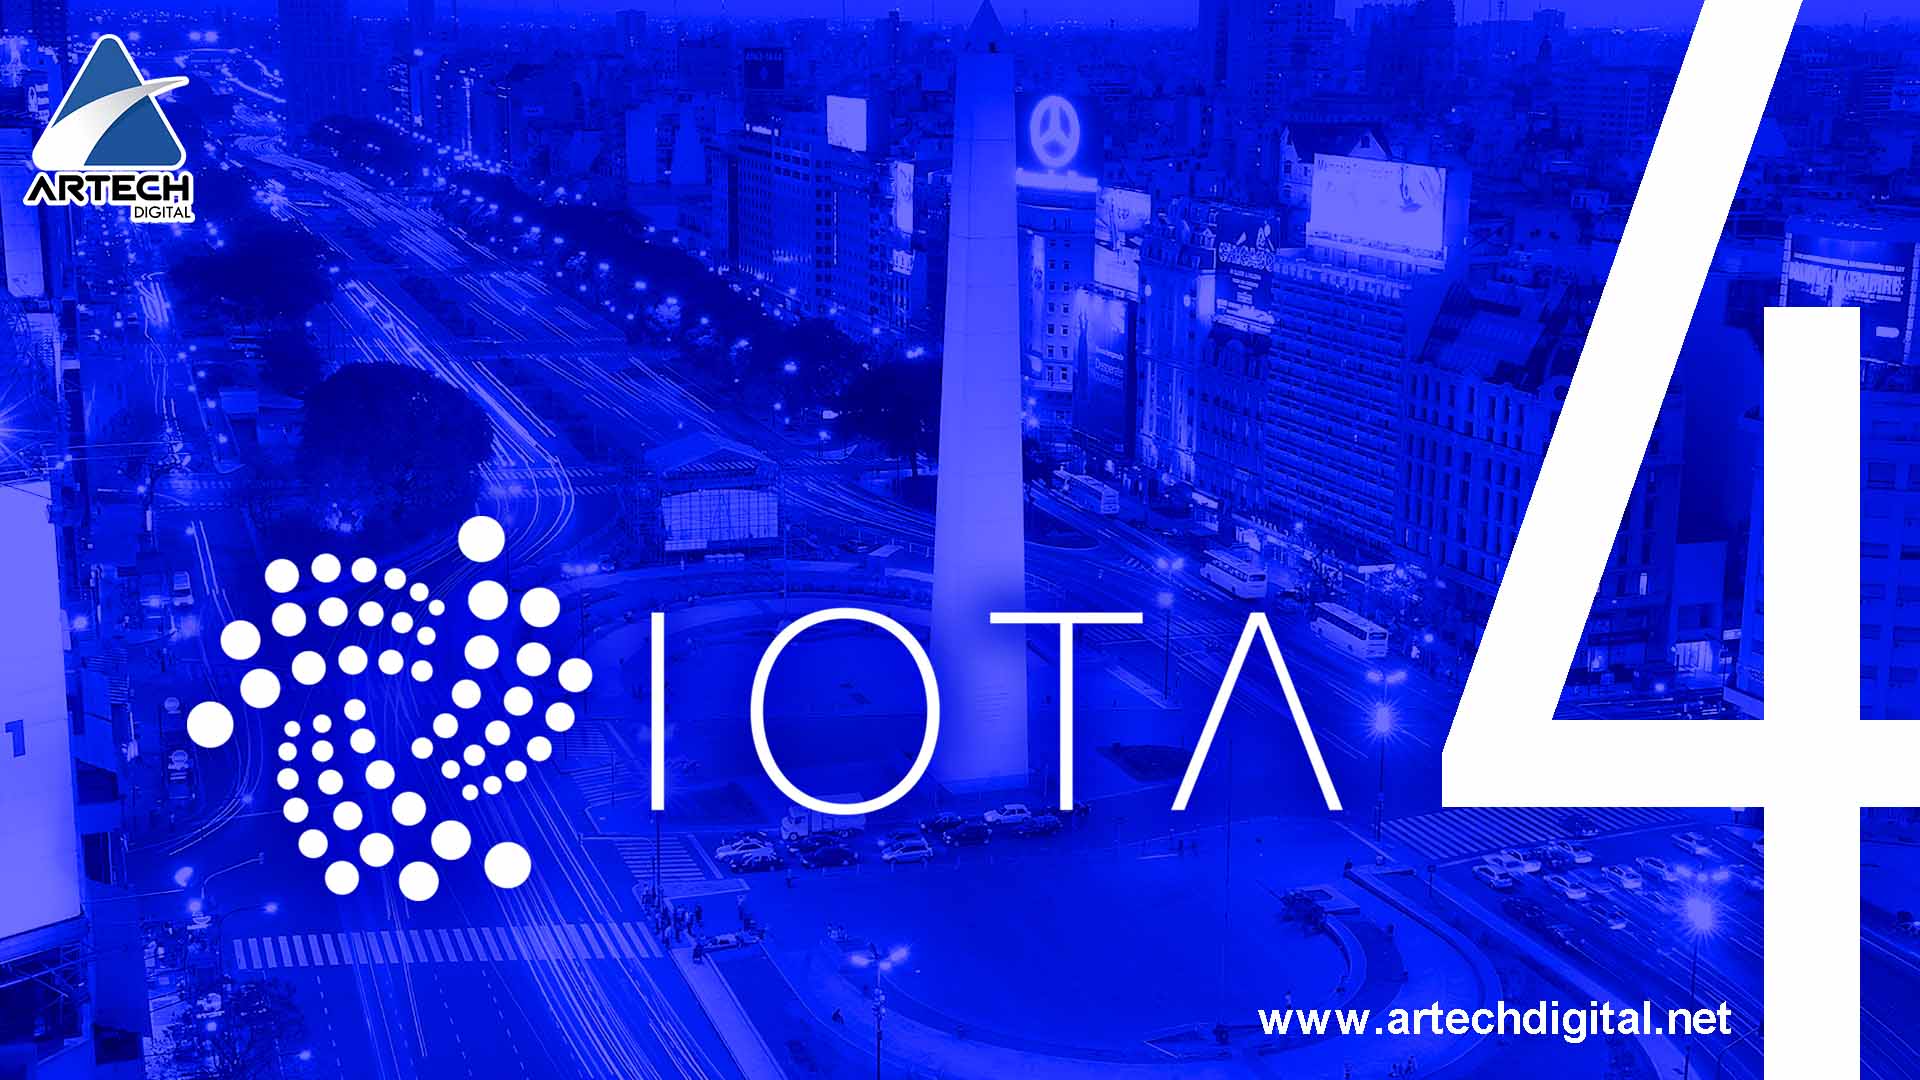 Cuarta edición IOTA Buenos Aires Meetup será realizada el 22 de noviembre